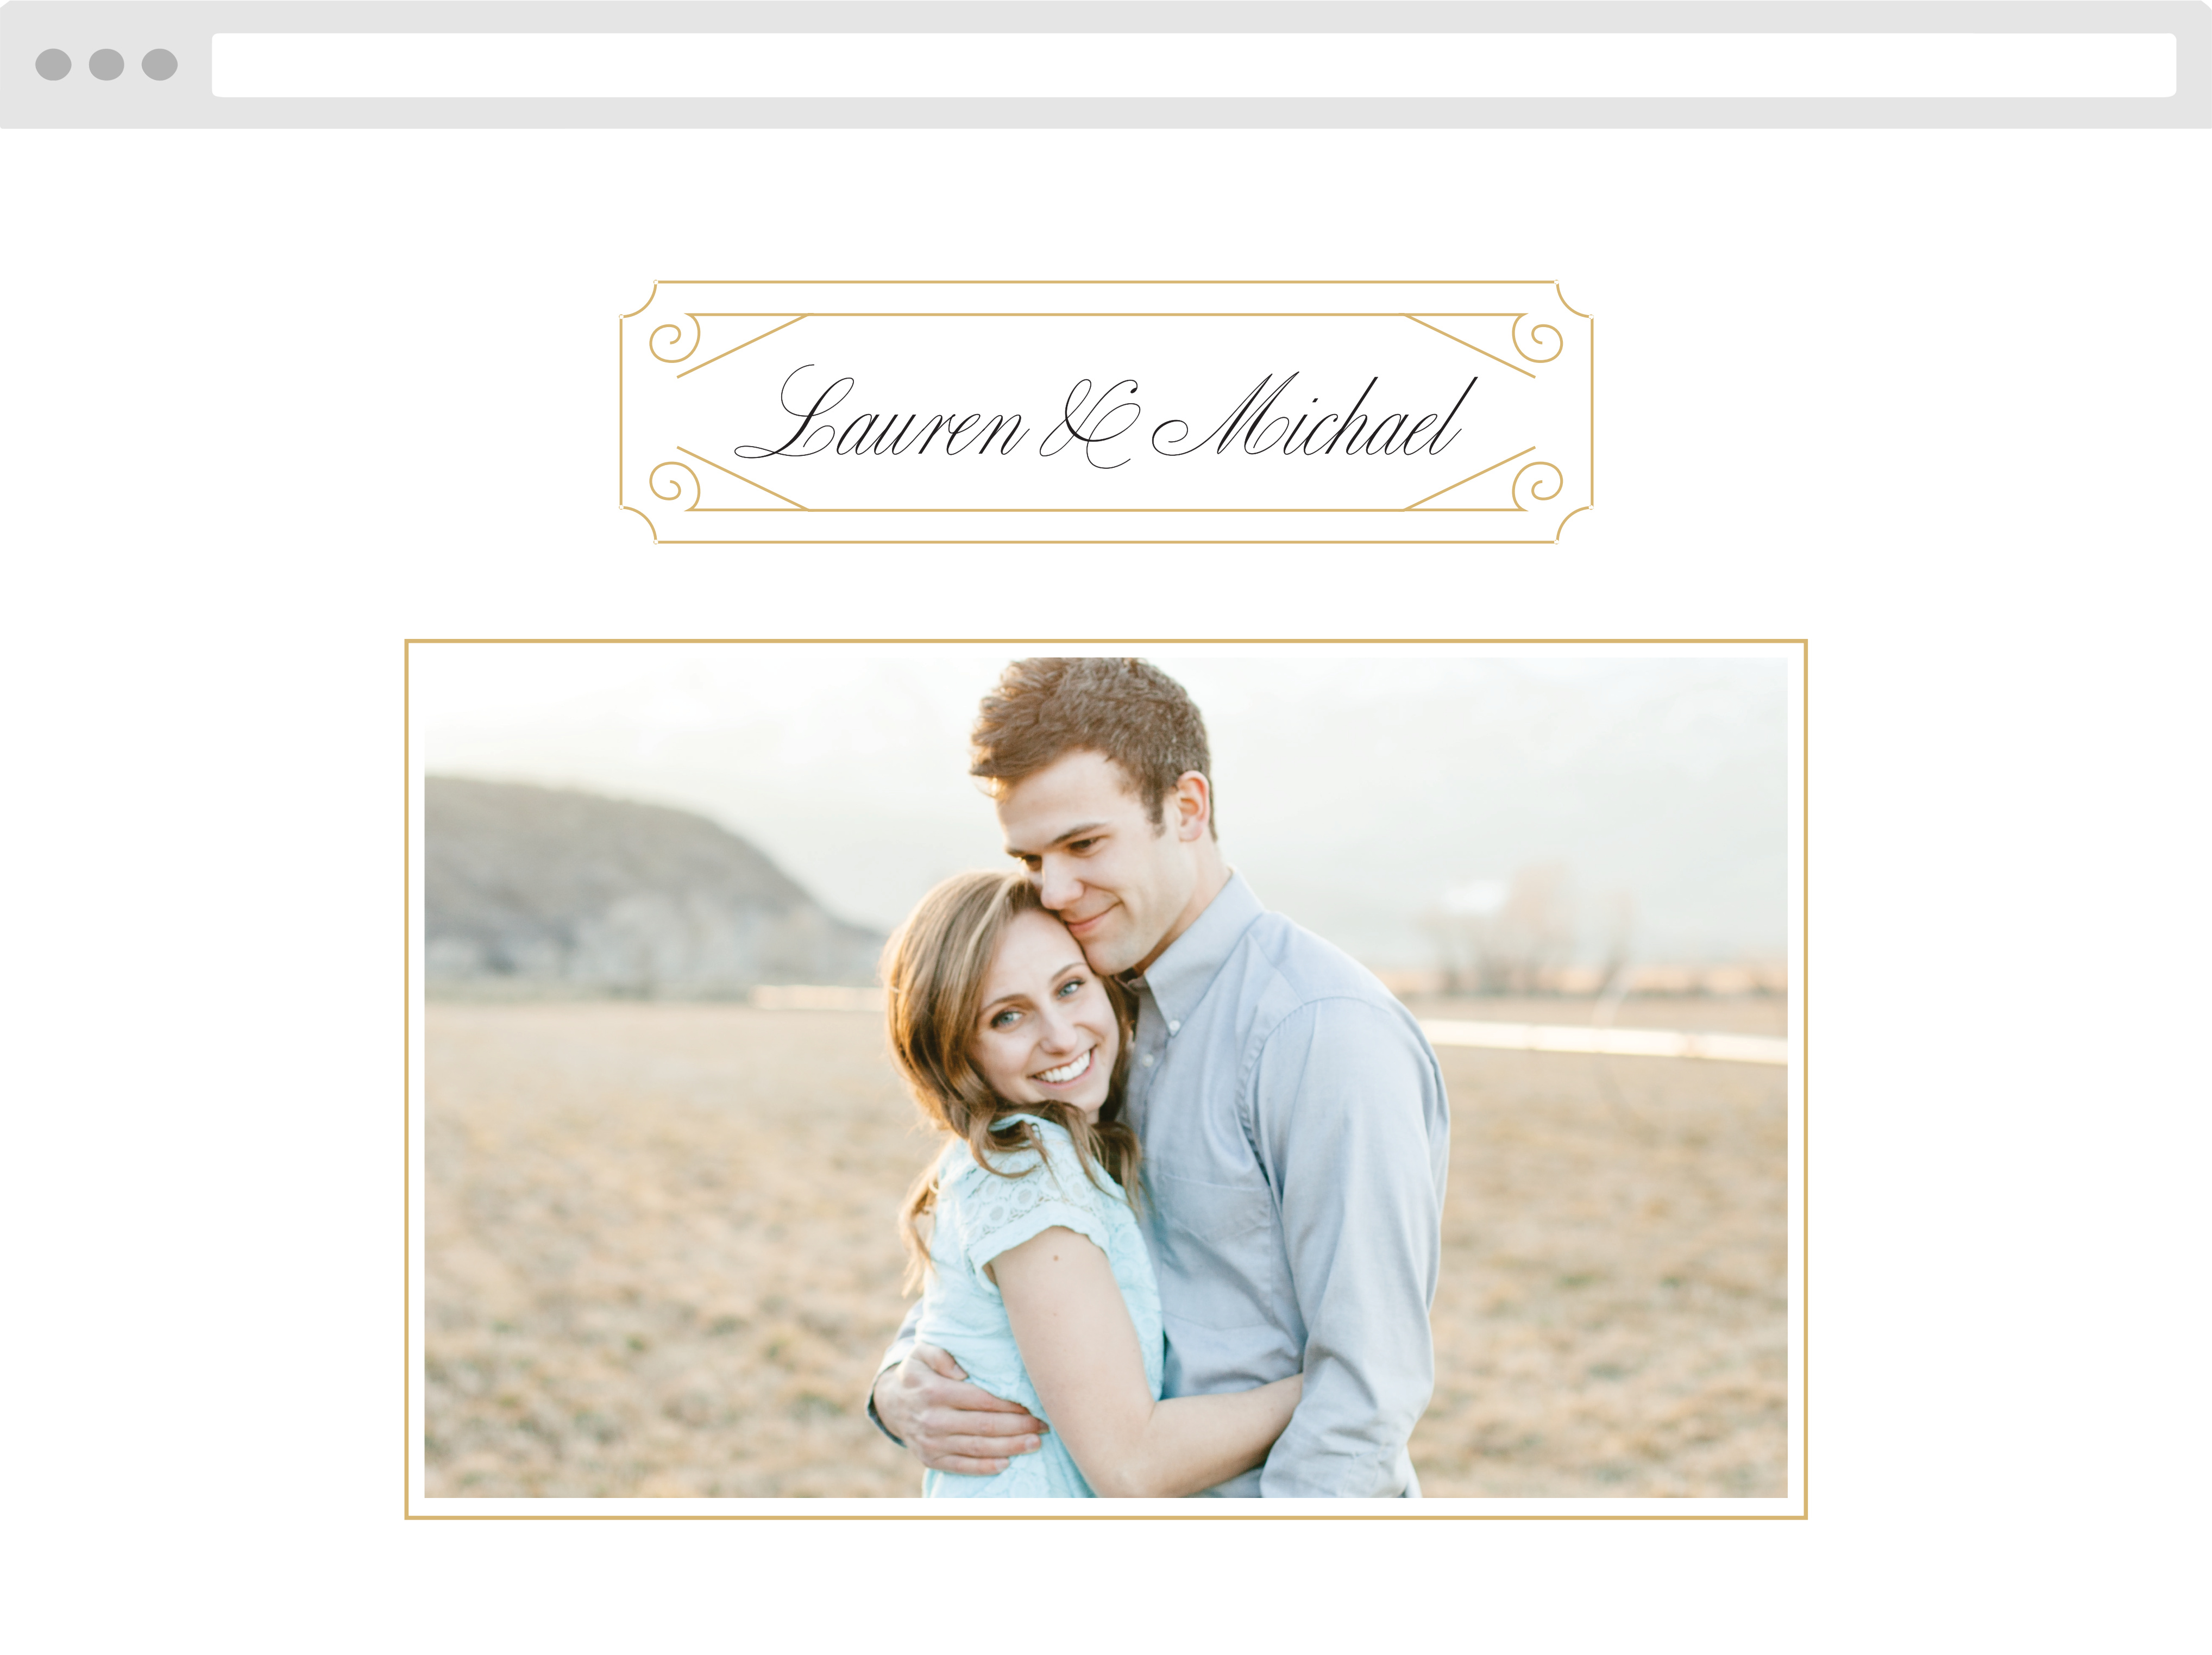 New Deco Frame Wedding Website